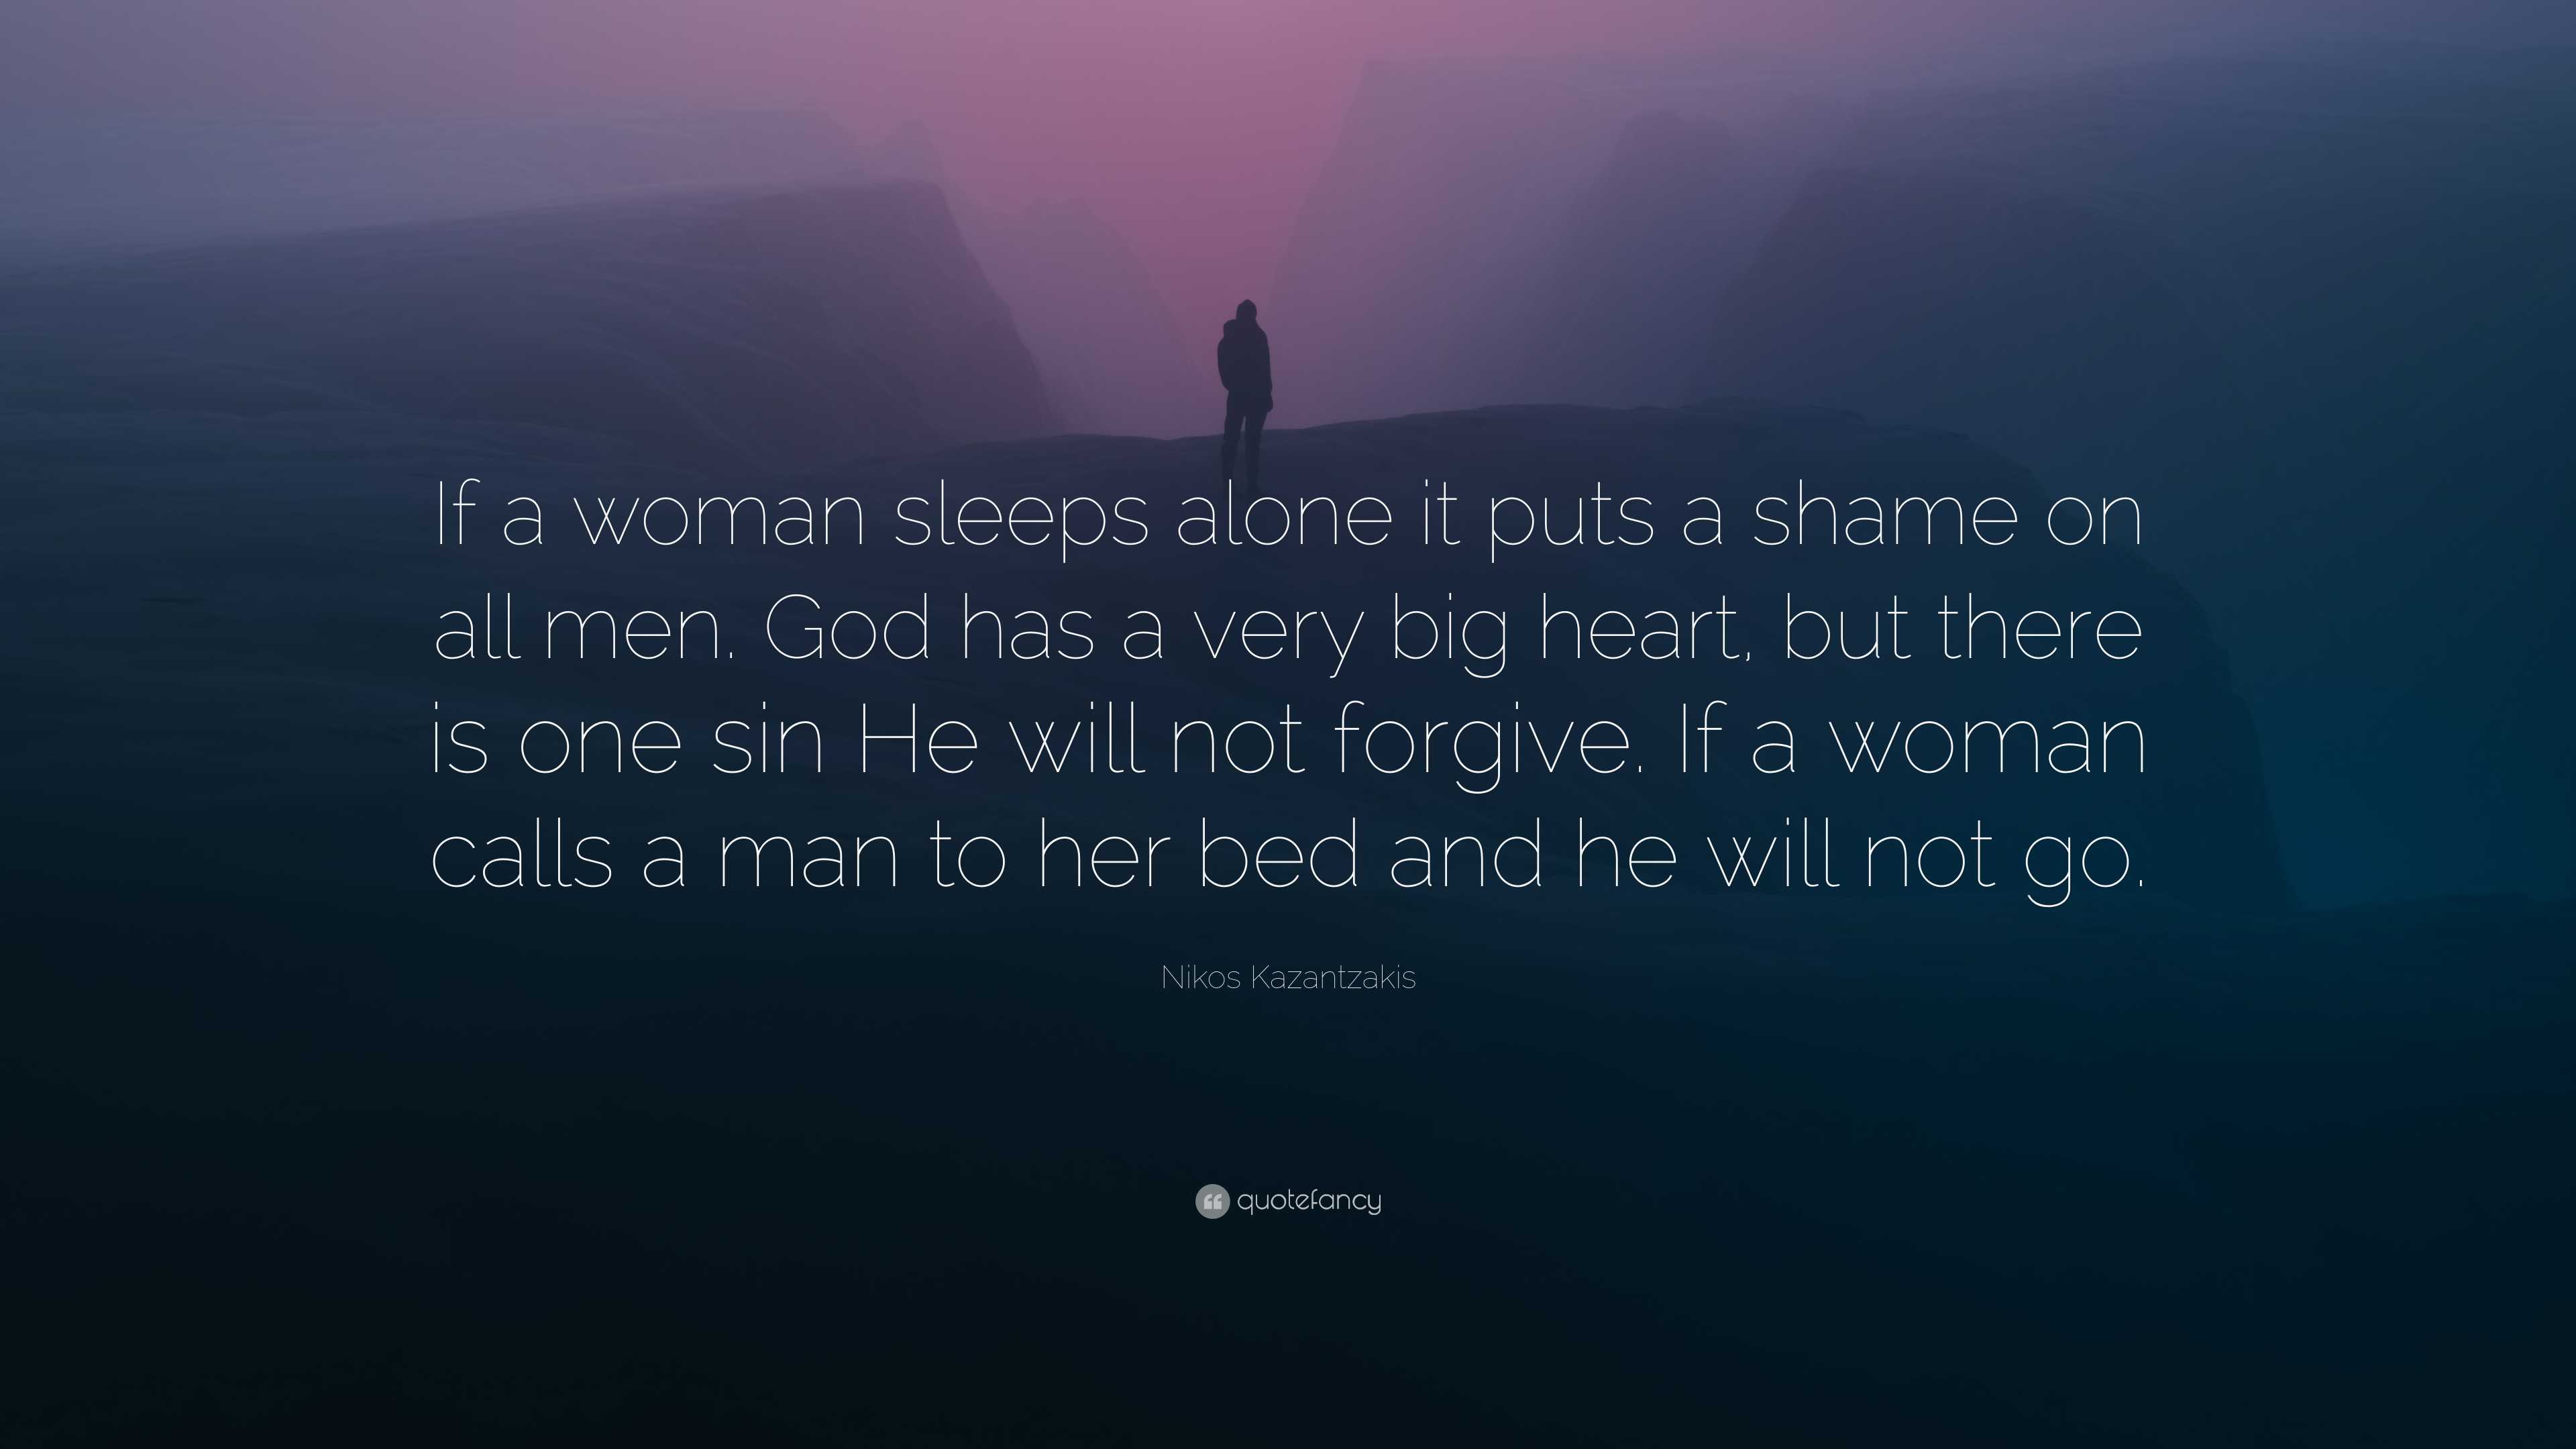 Nikos Kazantzakis Quote: “If a woman sleeps alone it puts a shame